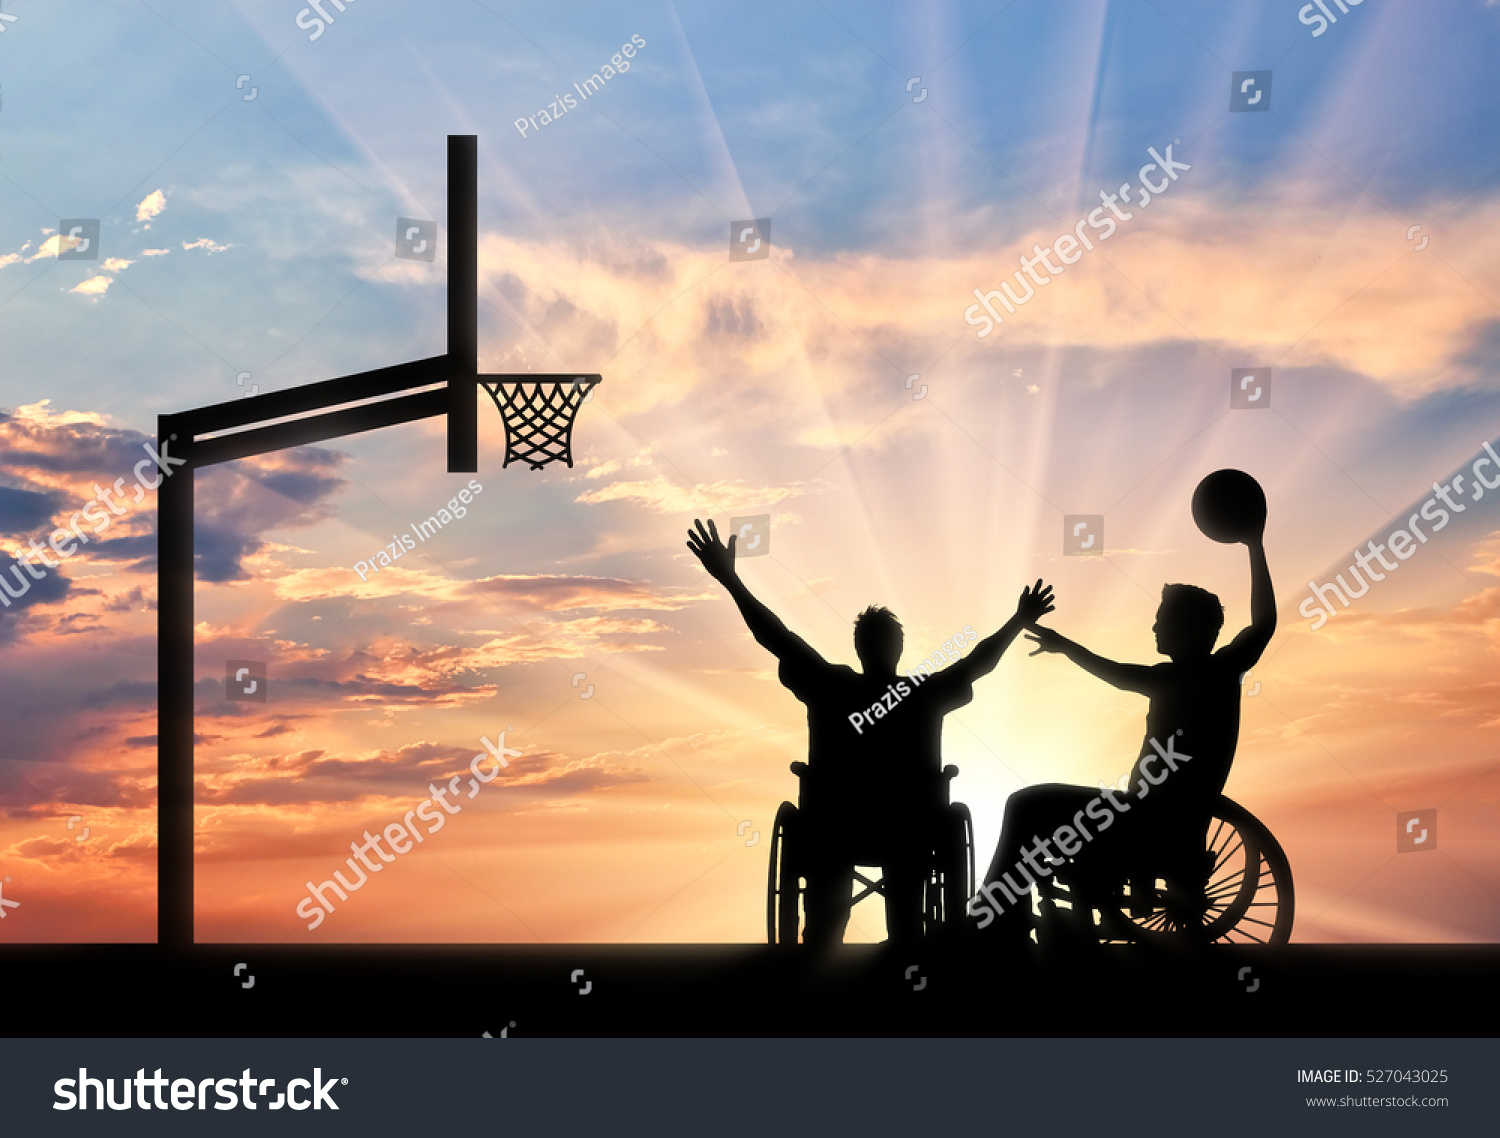 車椅子の運動選手が ボールの夕日を入れてバスケットボールコートでバスケットボールをする スポーツと意志のコンセプト のイラスト素材